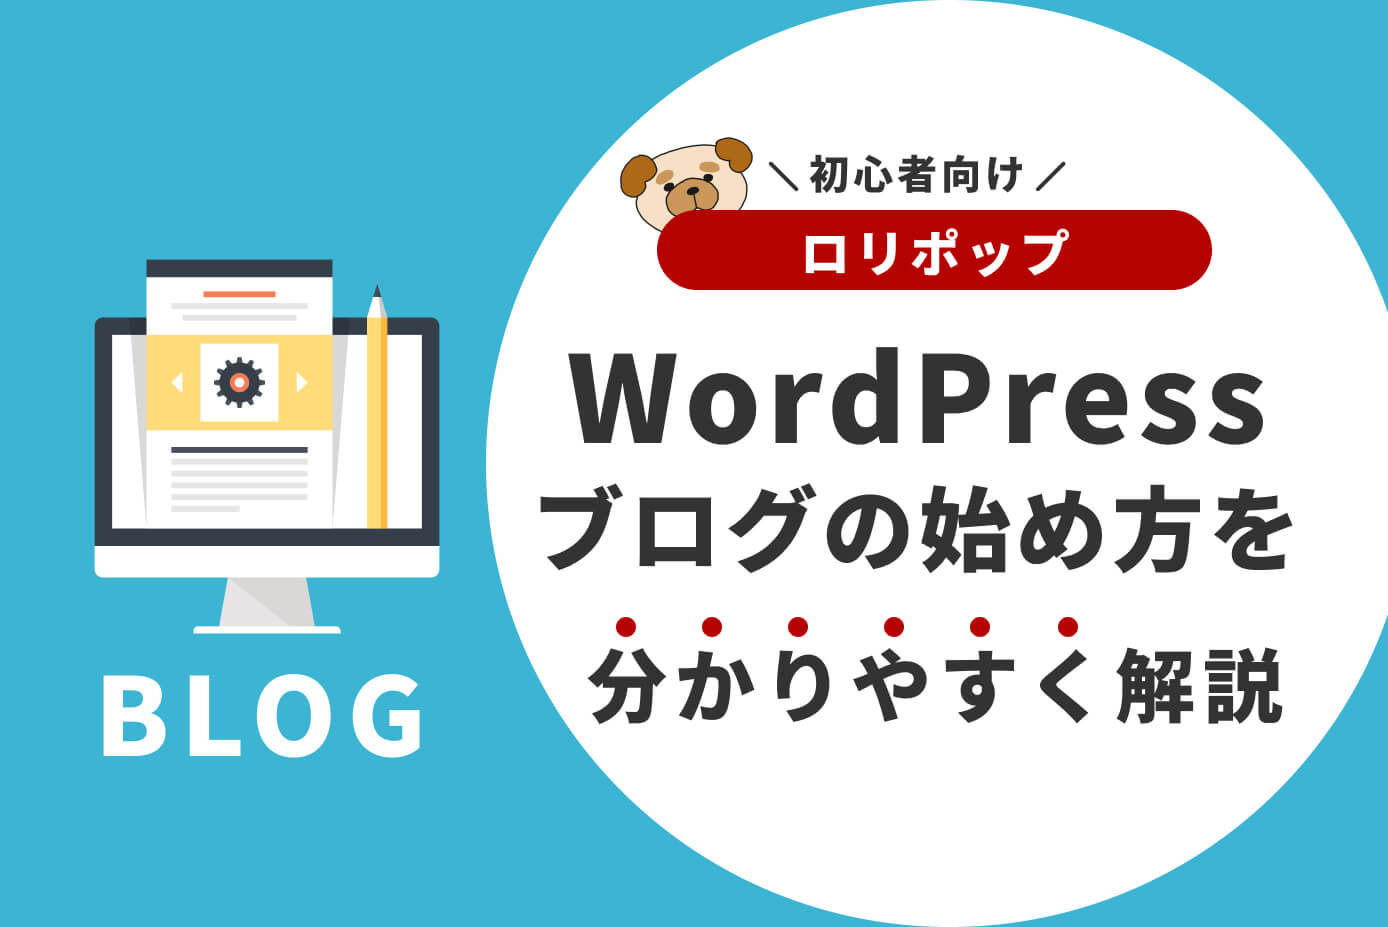 【ロリポップ】WordPressブログの始め方を分かりやすく解説【初心者向け】